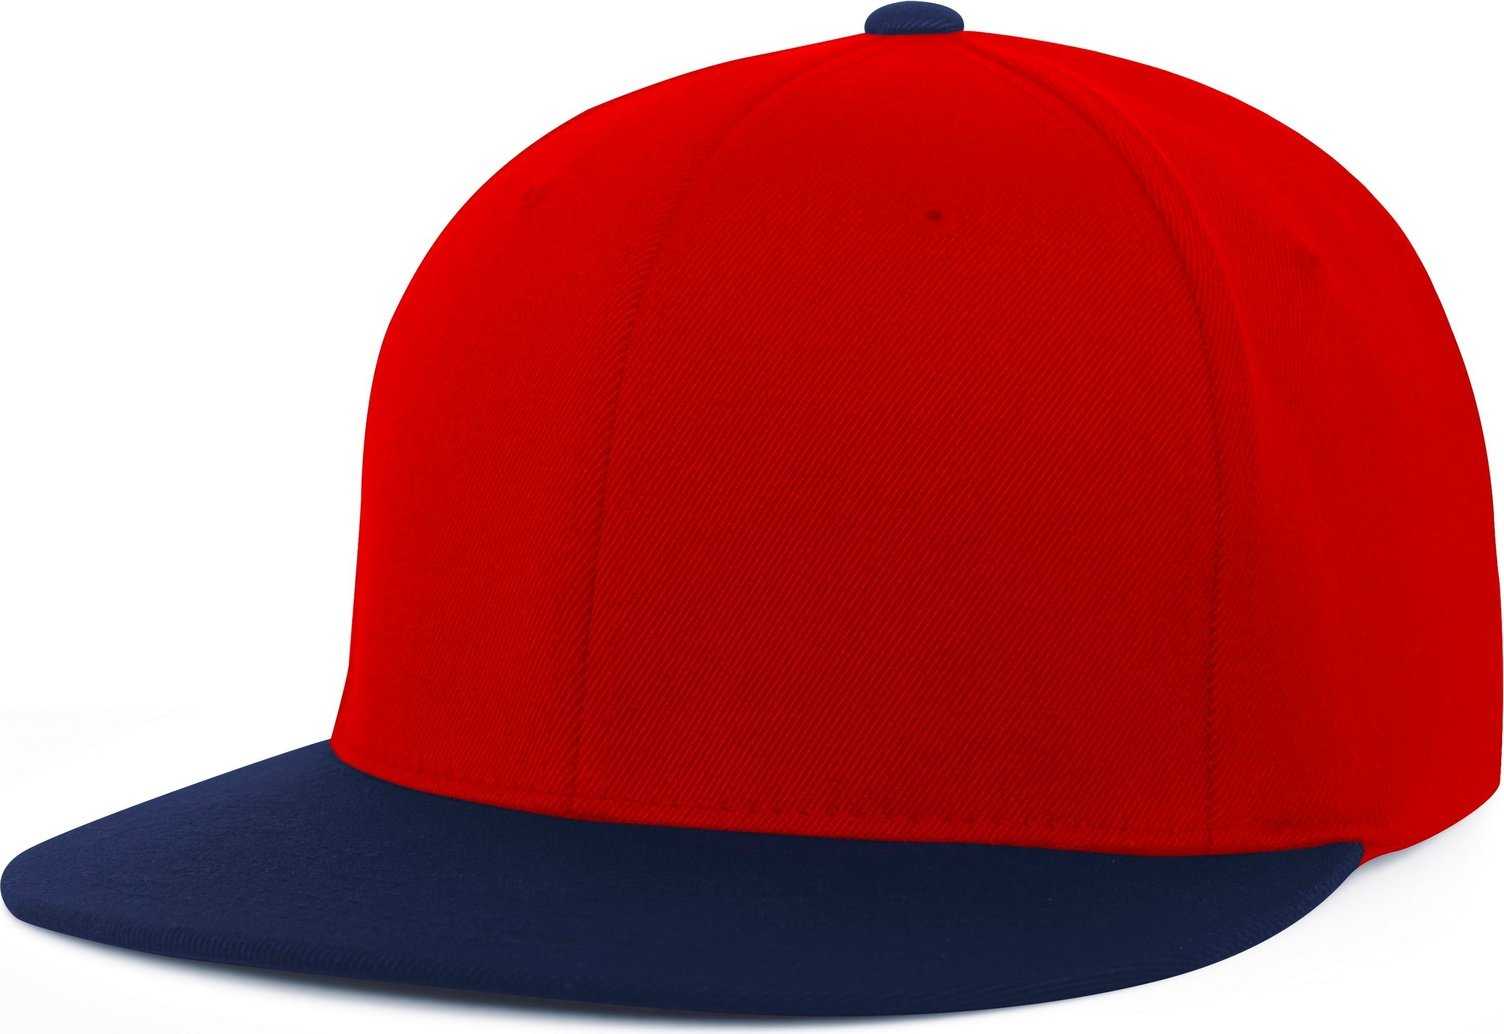 Pacific Headwear Es811 Premium A/C?›?ý Performance Flexfit Cap - Red Navy - HIT a Double